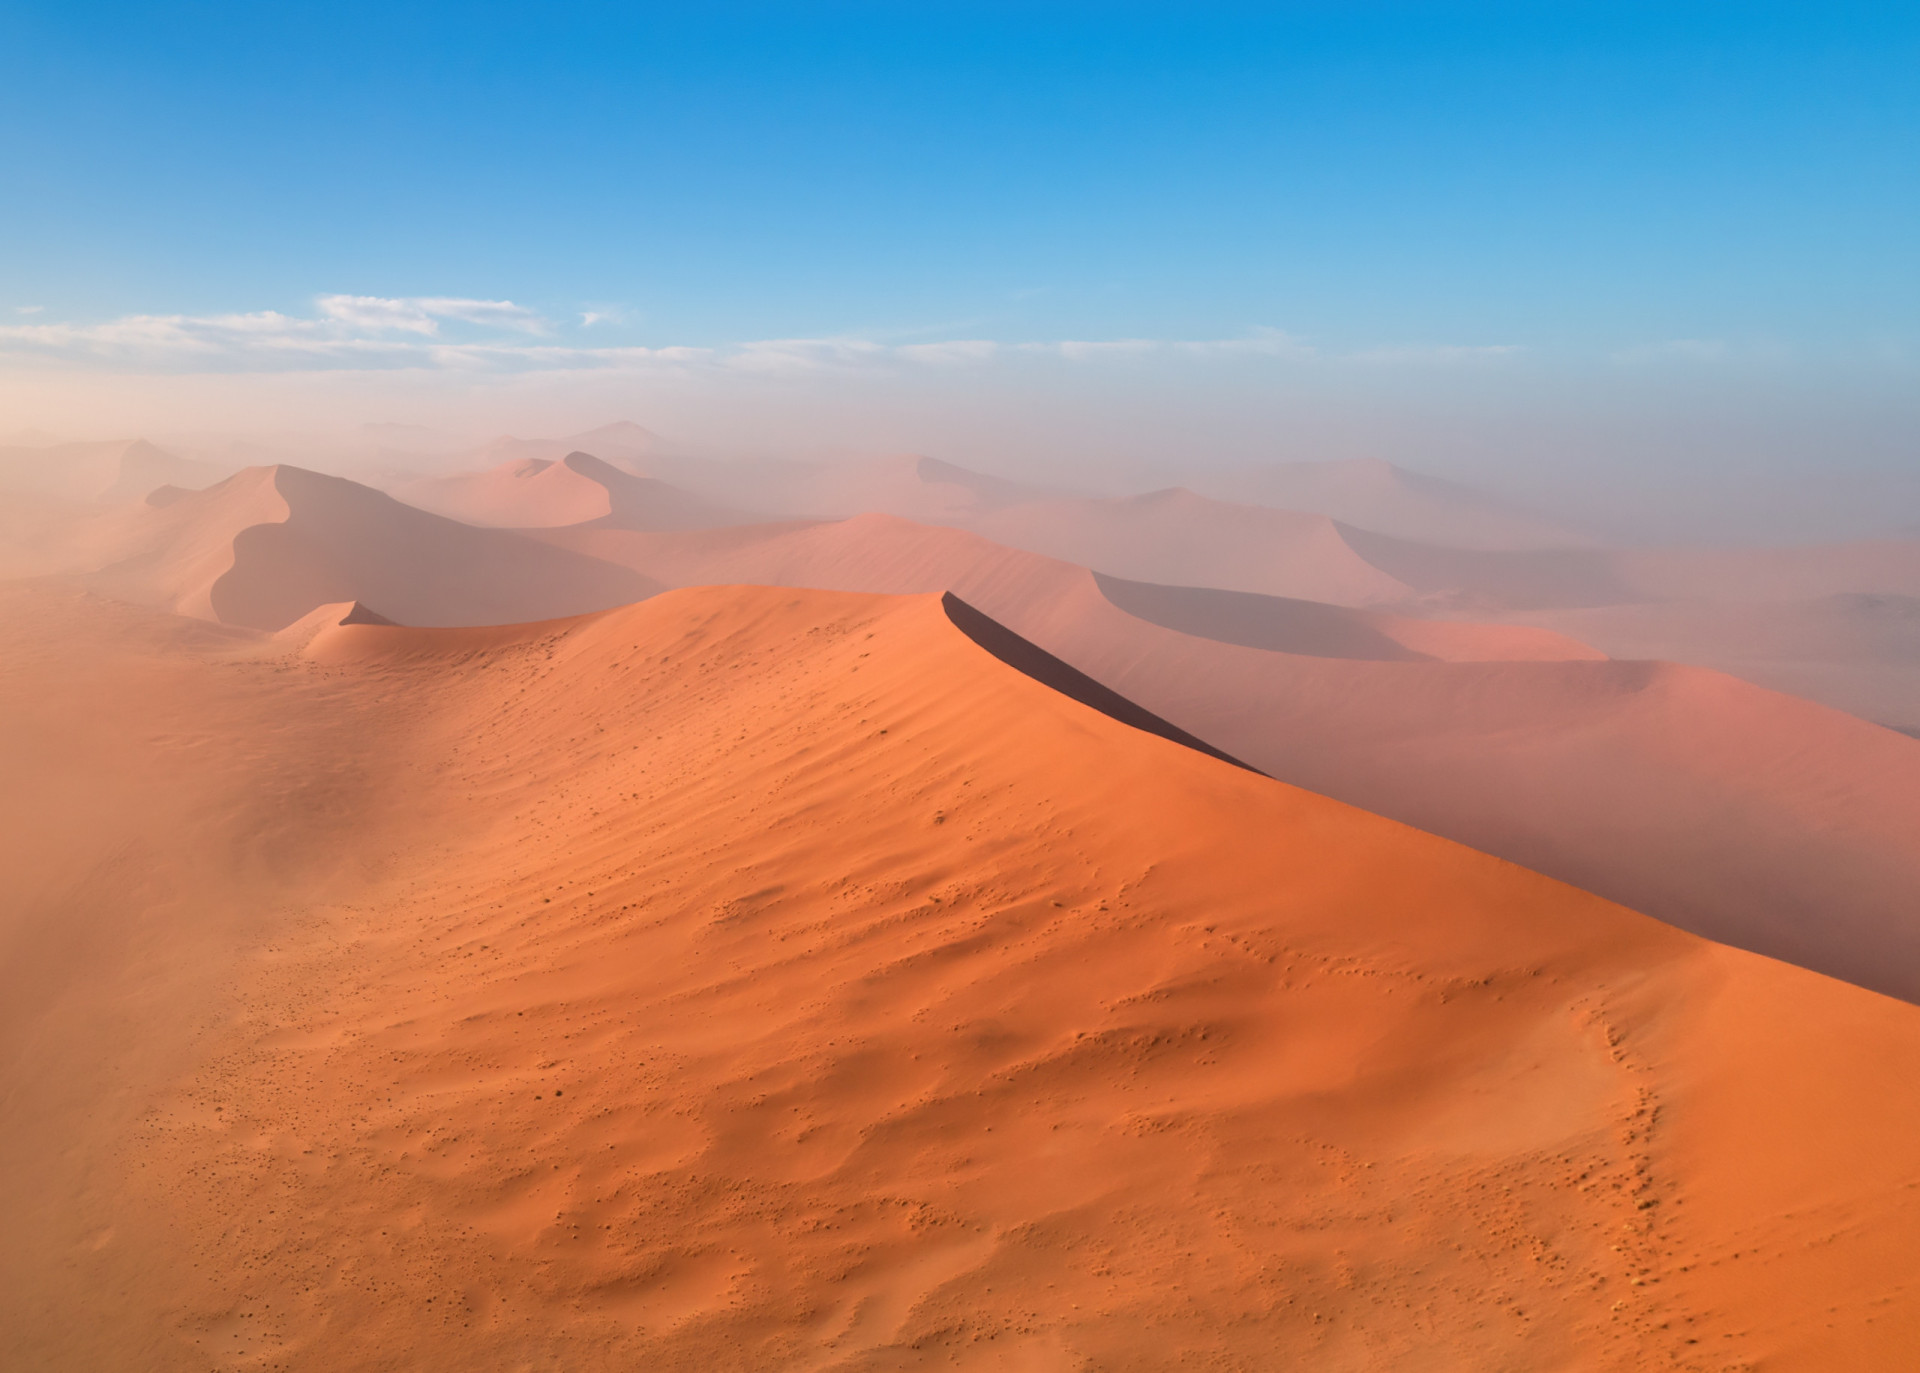 <p>Datant de 55 à 80 millions d'années, le Namib est considéré comme le plus ancien désert du monde.</p><p><a href="https://www.msn.com/fr-fr/community/channel/vid-7xx8mnucu55yw63we9va2gwr7uihbxwc68fxqp25x6tg4ftibpra?cvid=94631541bc0f4f89bfd59158d696ad7e">Suivez-nous et accédez tous les jours à du contenu exclusif</a></p>